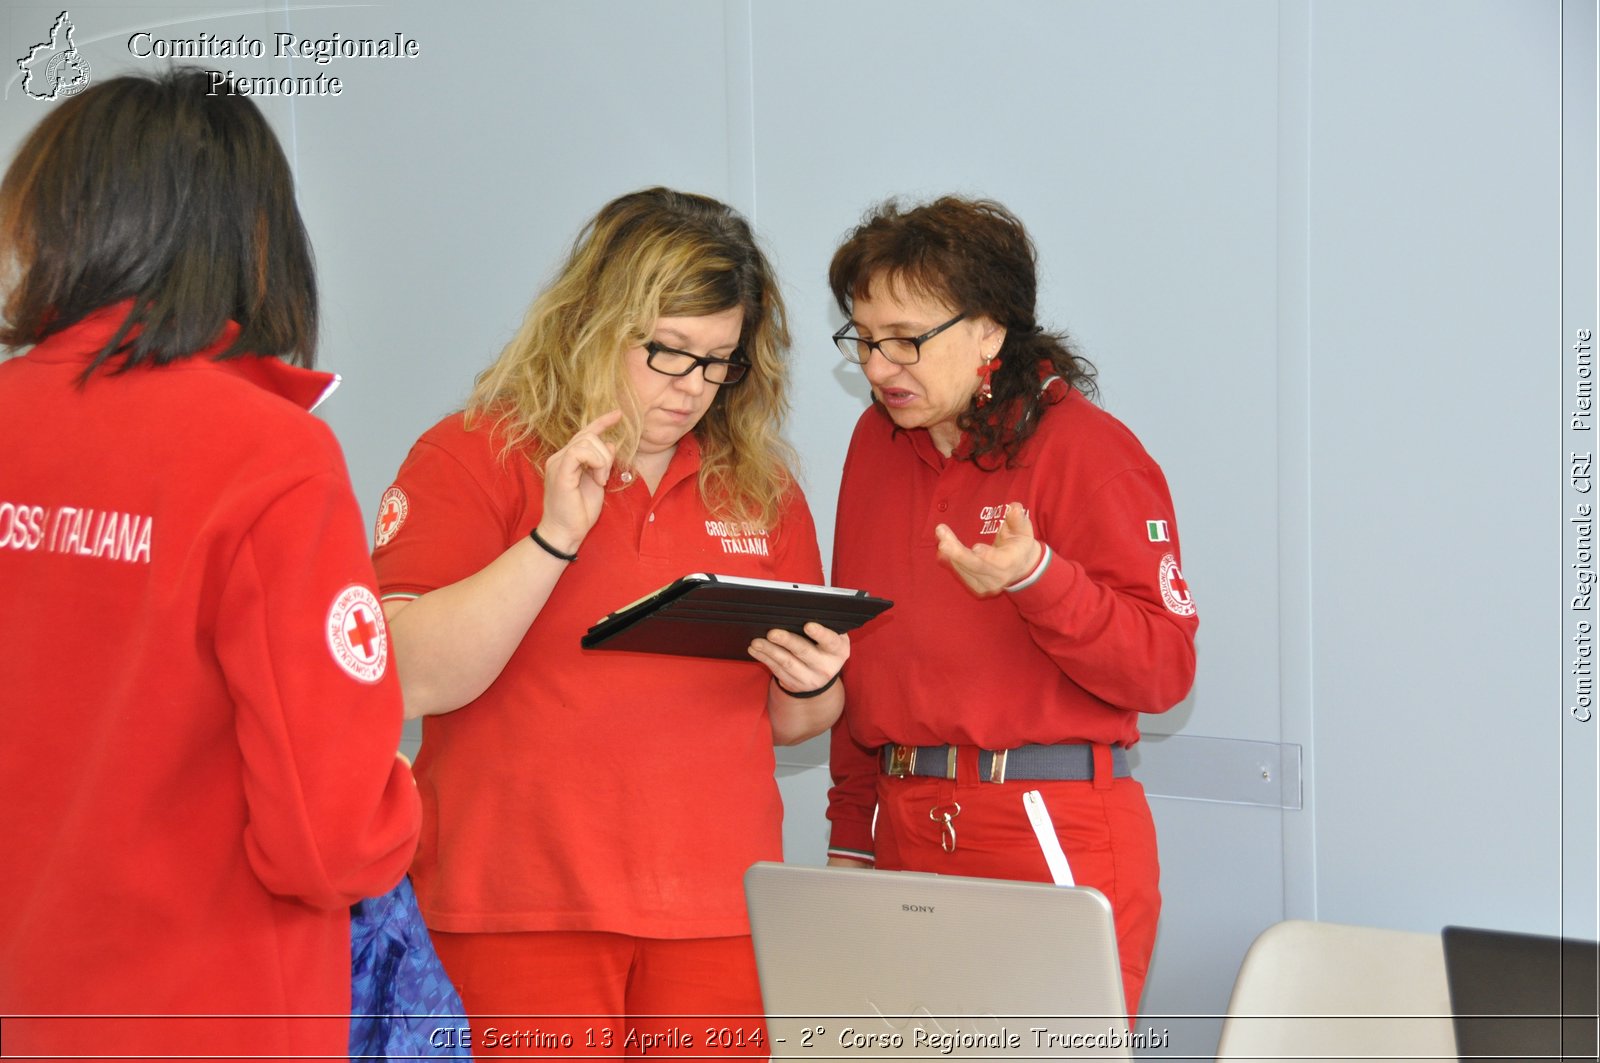 CIE Settimo 13 Aprile 2014 - 2 Corso Regionale Truccabimbi - Croce Rossa Italiana - Comitato Regionale del Piemonte